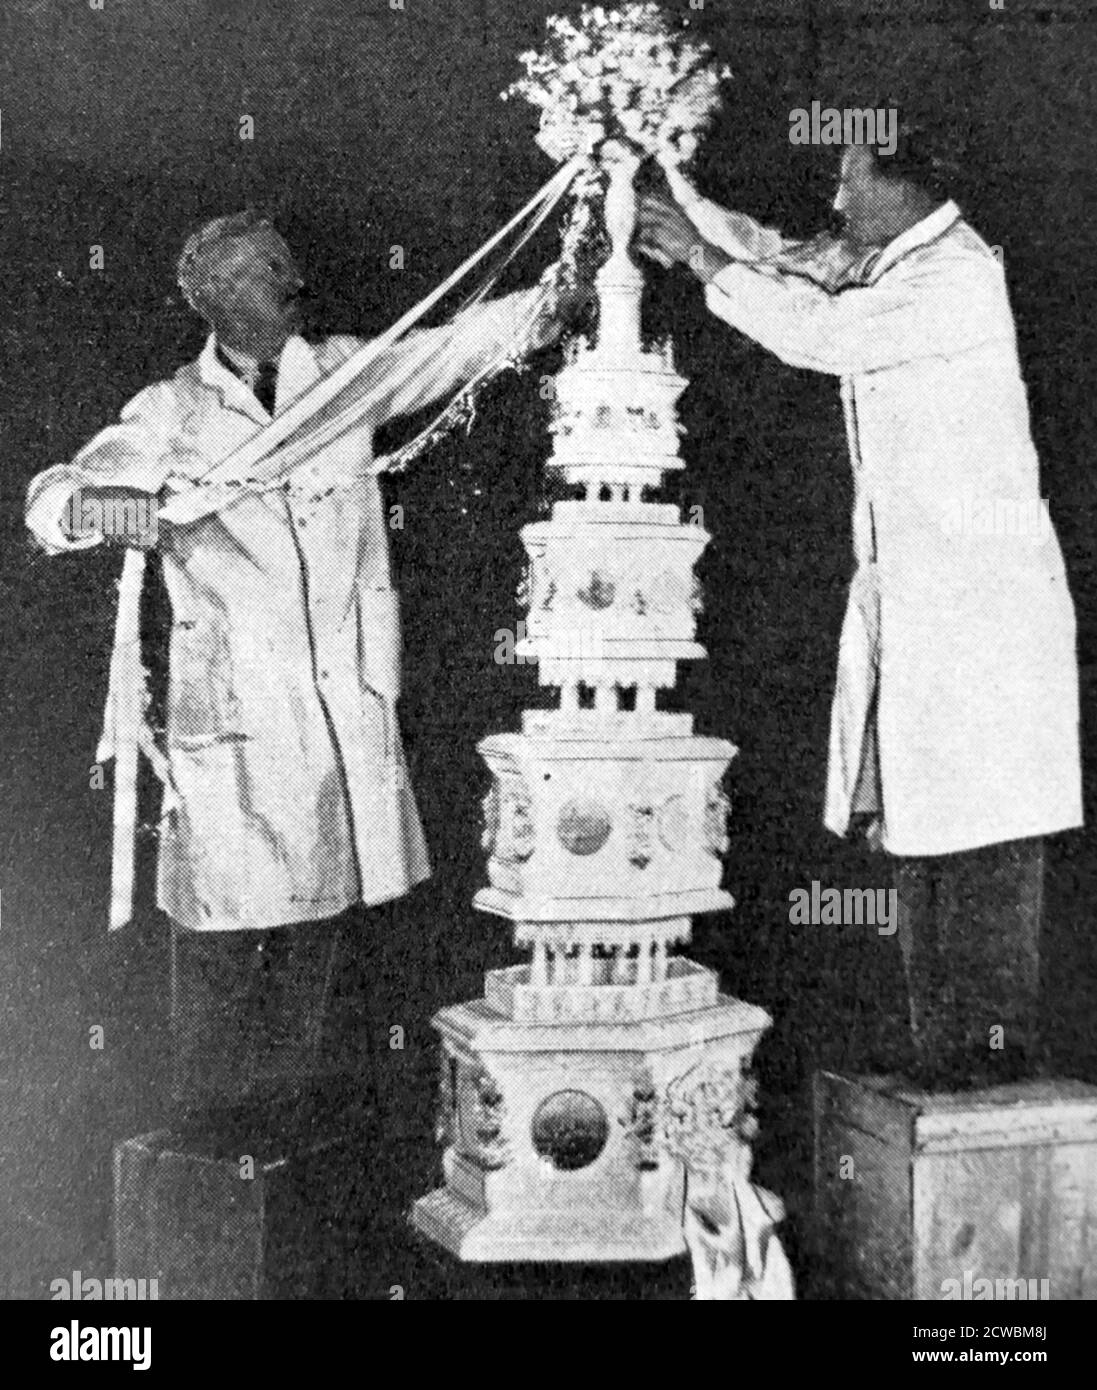 Foto in bianco e nero della torta nuziale per il matrimonio del Principe Giorgio, Duca di Kent (1902-1942) e della Principessa Marina di Grecia (1906-1968); il matrimonio ebbe luogo il 29 novembre 1934. Foto Stock